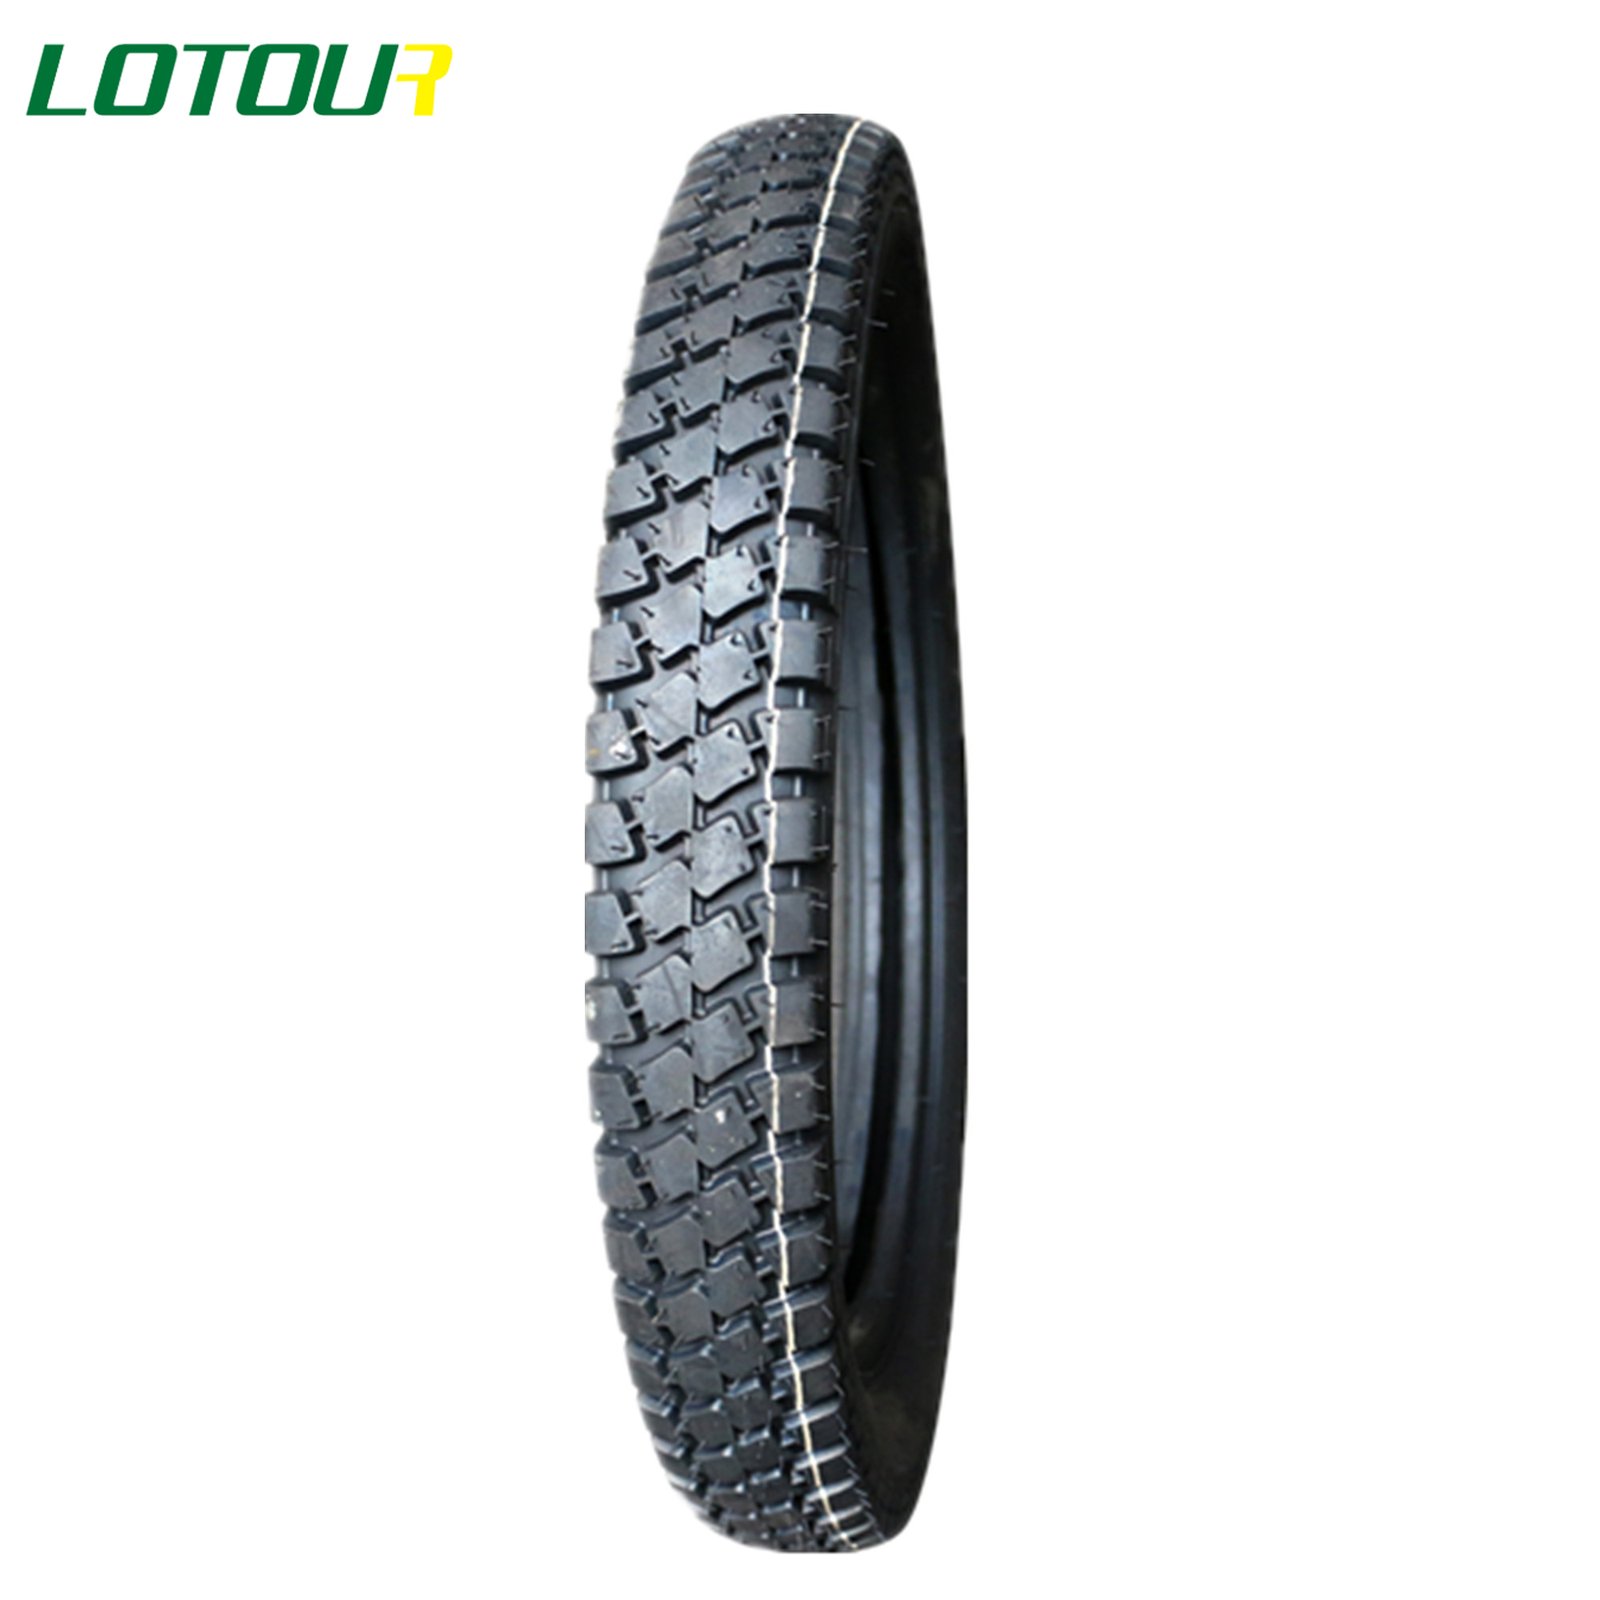 Lotour Tire M2064